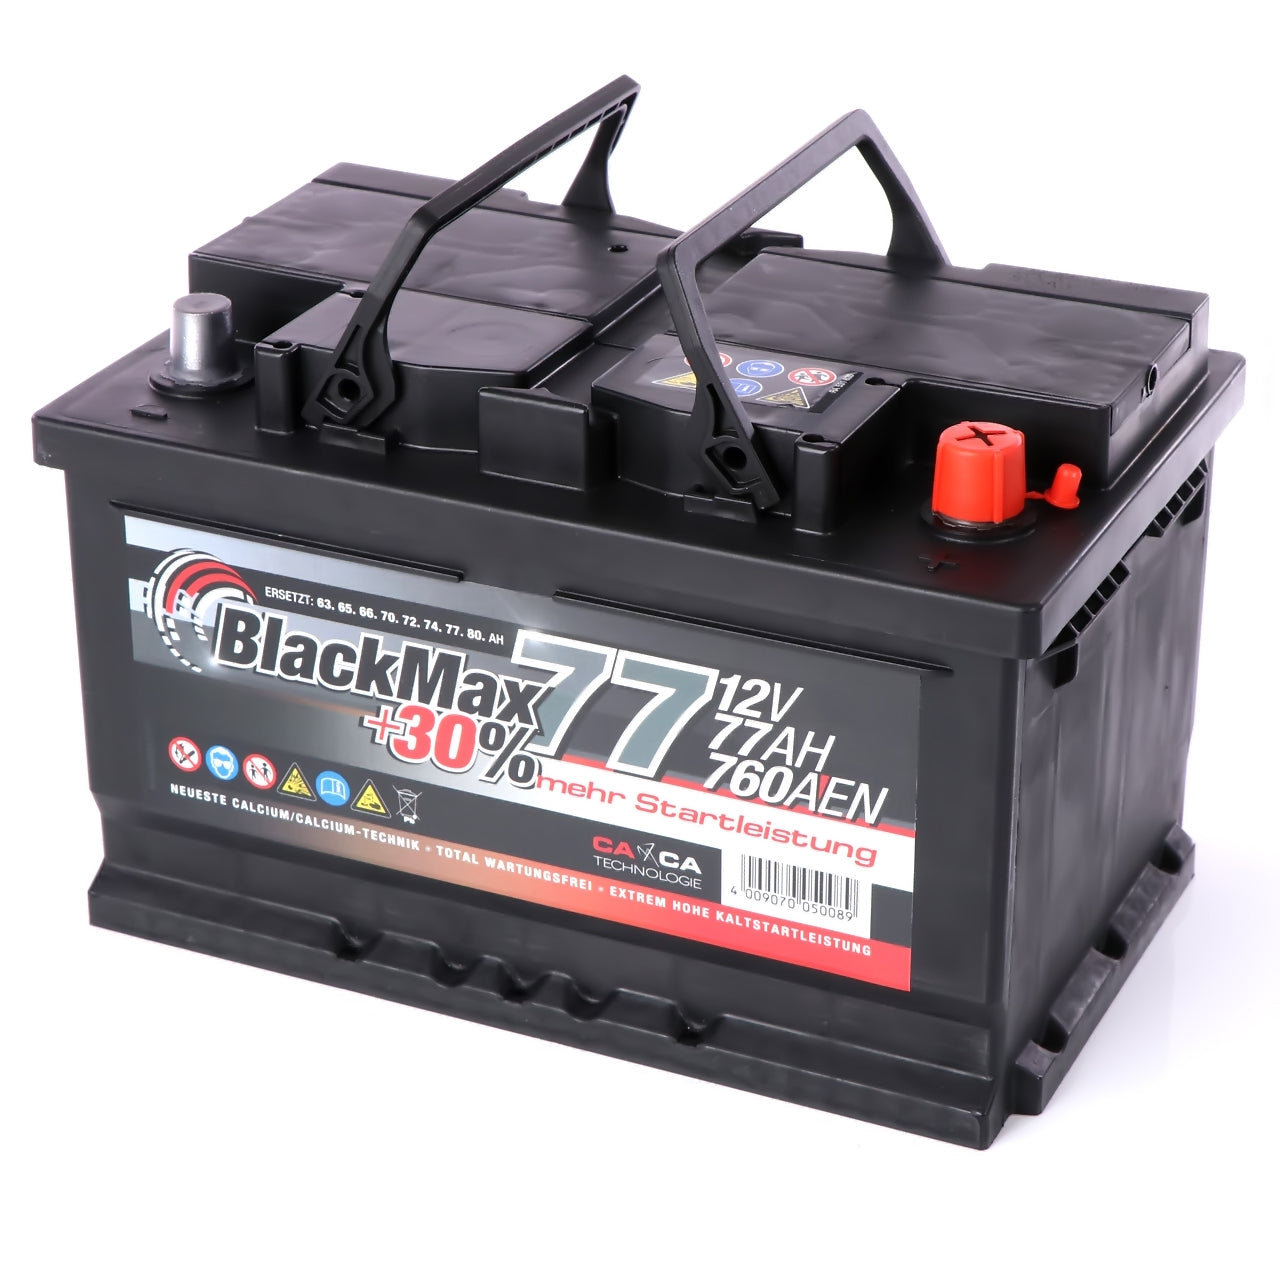 BlackMax +30 Edition Autobatterie 12V 77Ah 760A/EN